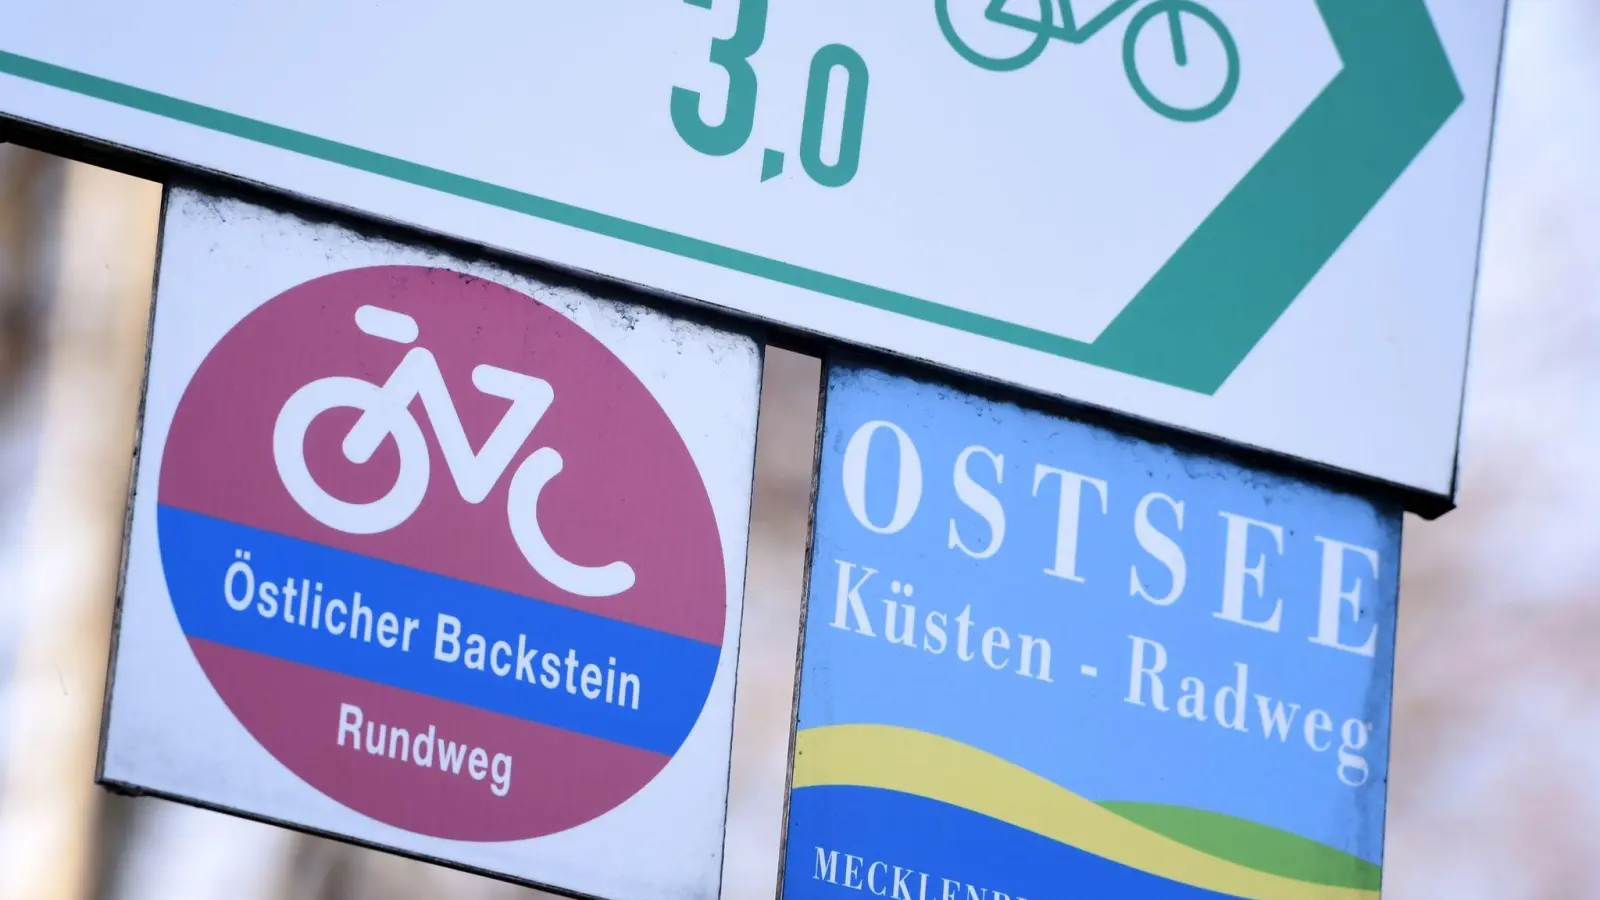 In Mecklenburg-Vorpommern ist laut aktueller Radreiseanalyse des Allgemeinen Deutschen Fahrrad-Clubs (ADFC) der Ostseeküsten-Radweg besonders beliebt. (Foto: Stefan Sauer/dpa-Zentralbild/ZB)